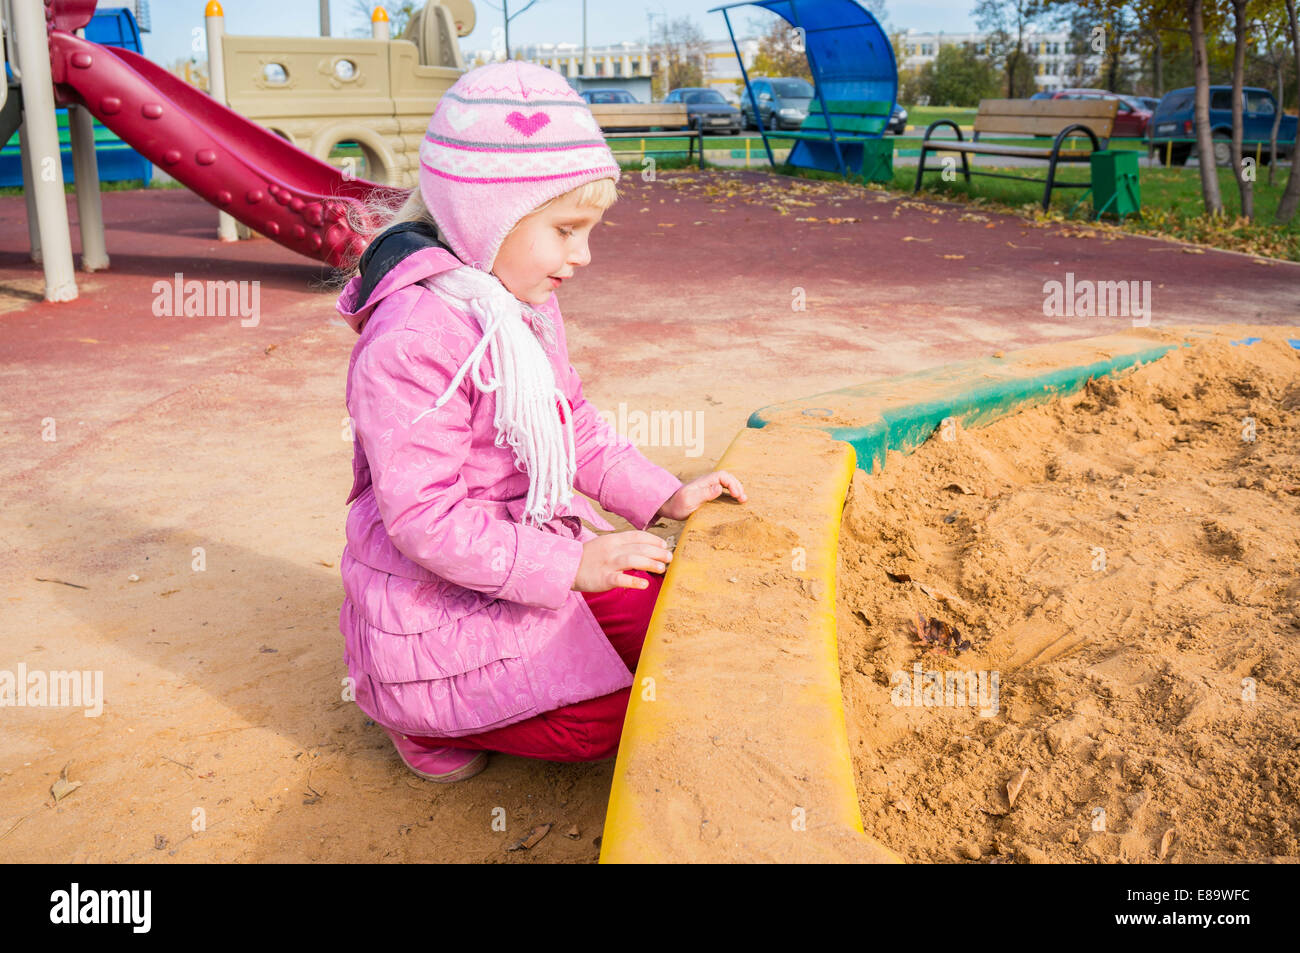 sad girl on the empty sandpit playground in autumn Stock Photo